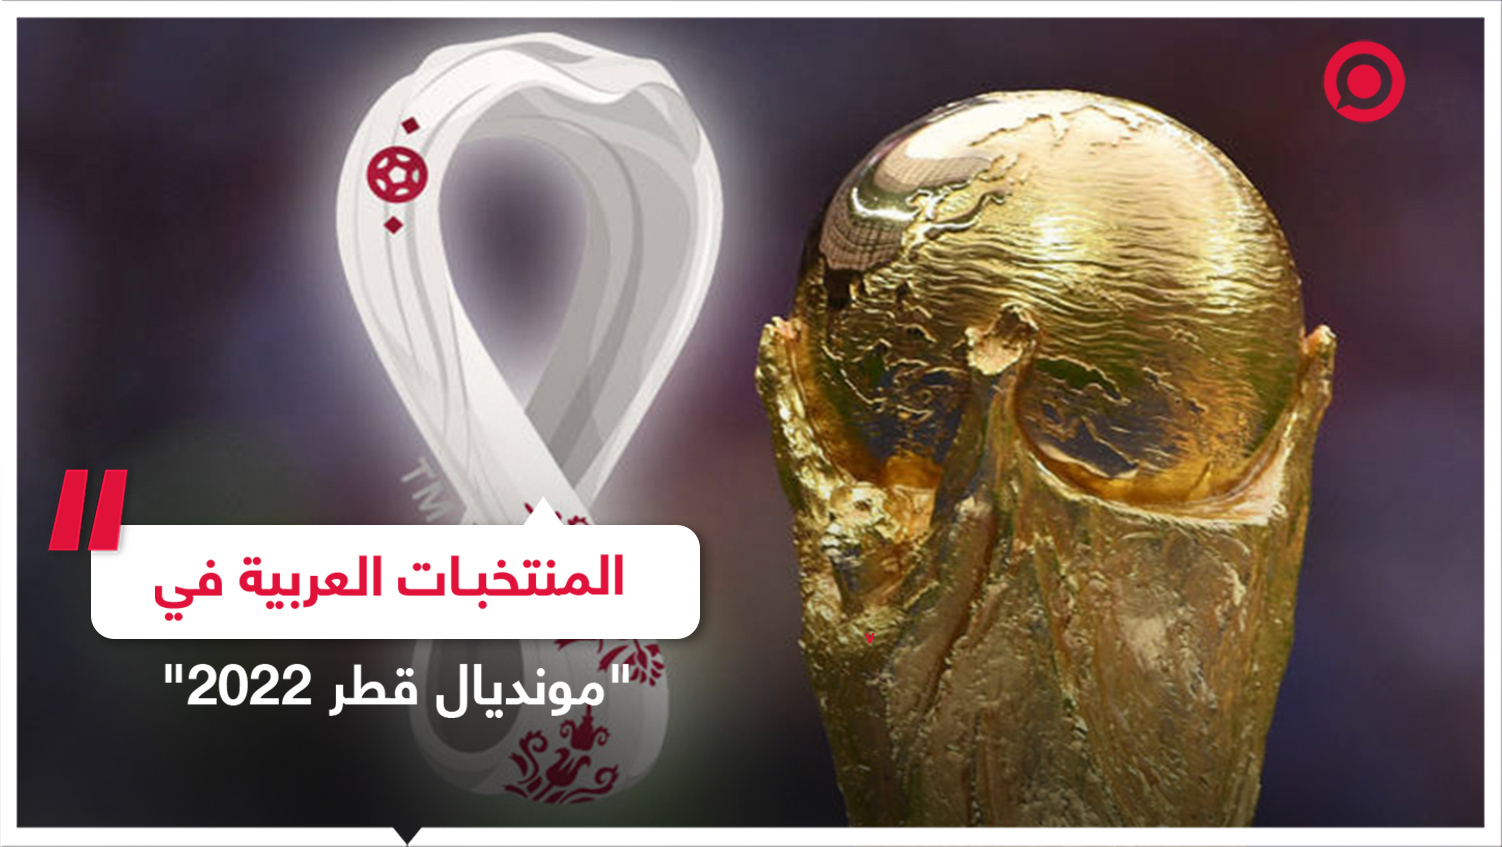 المراحل النهائية من رحلة المنتخبات العربية المشاركة في 